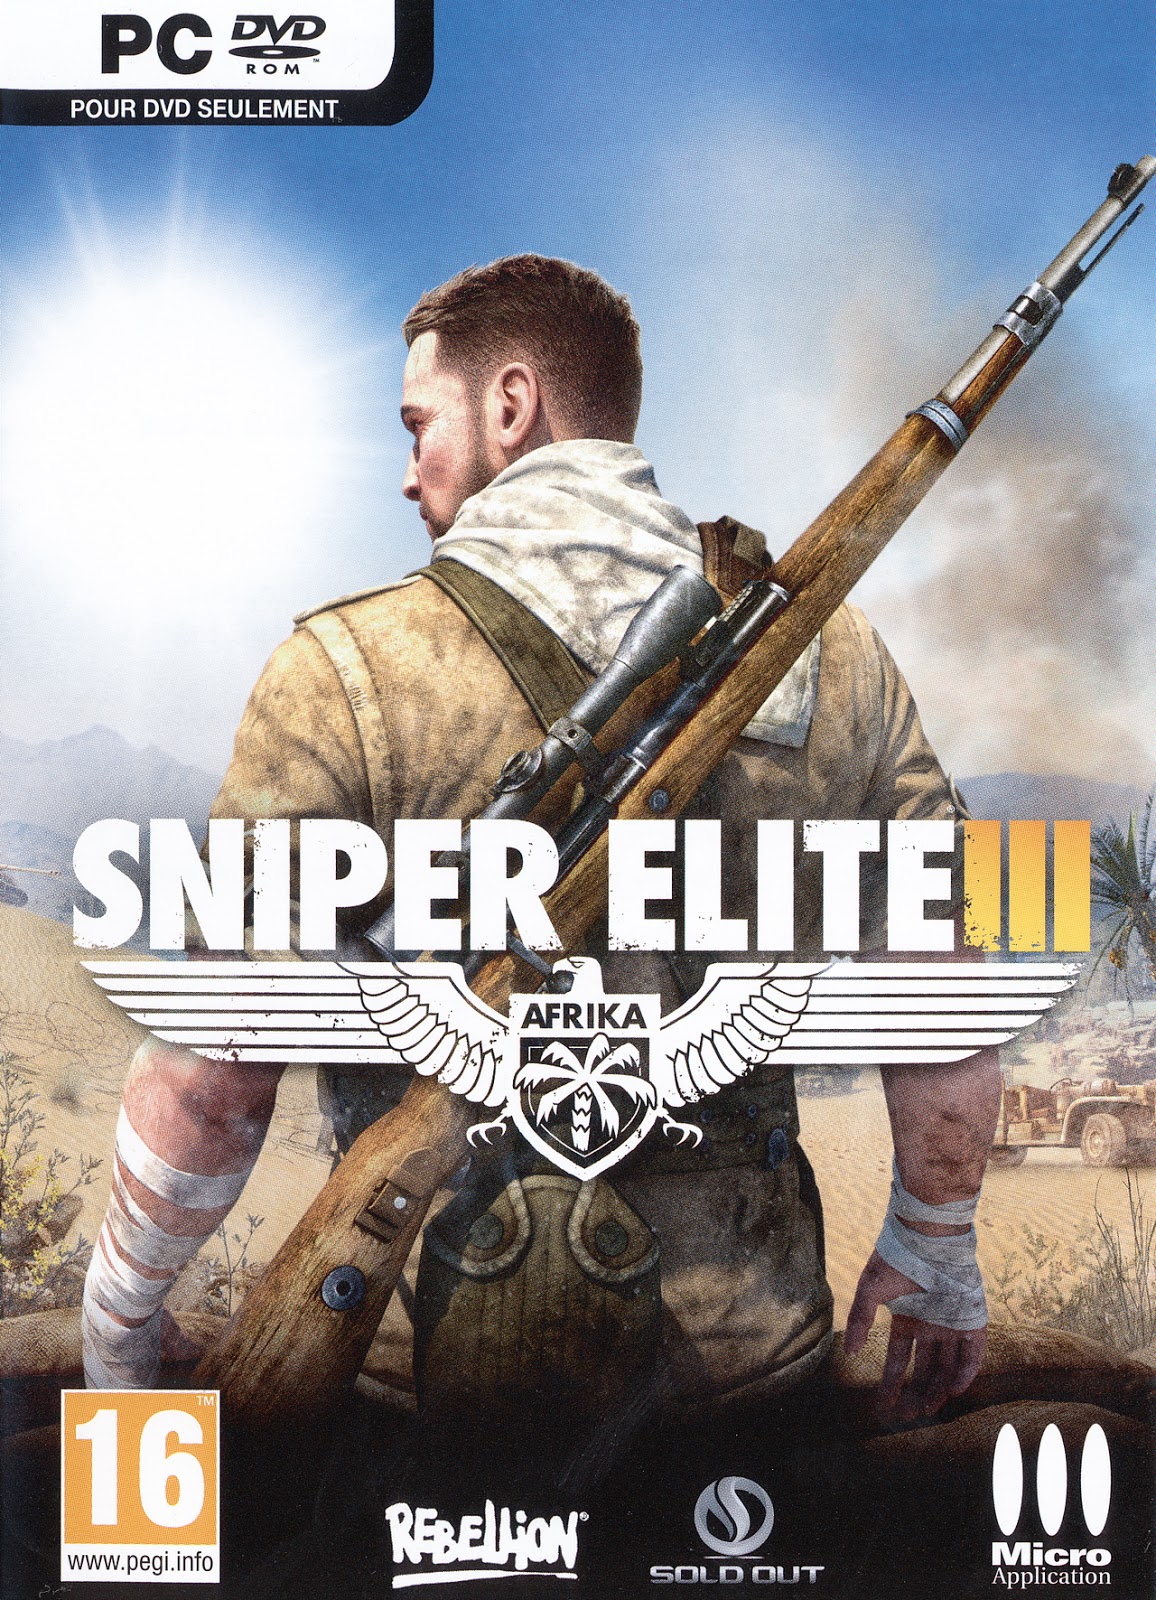 Sniper elite 3 highly compressed games download full